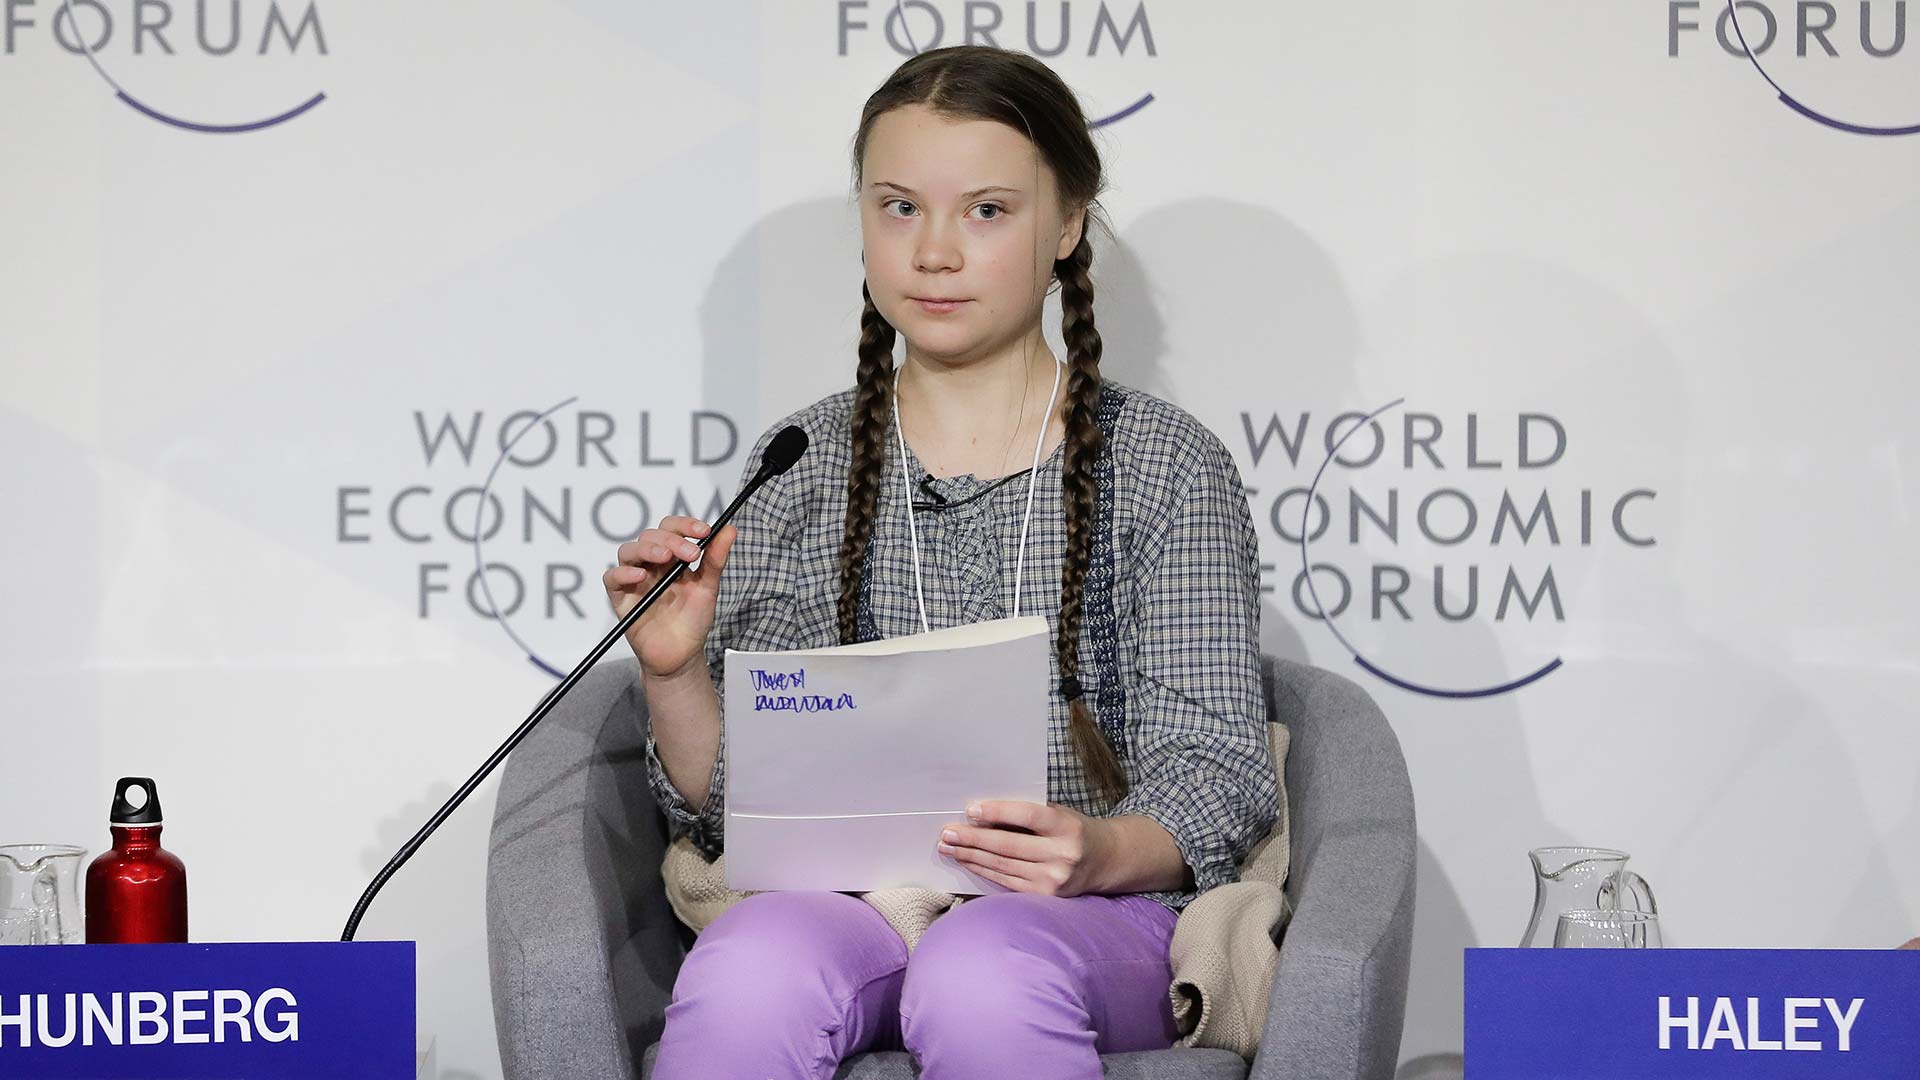 Acabar con la brecha de género, preocupación y asignatura pendiente de Davos